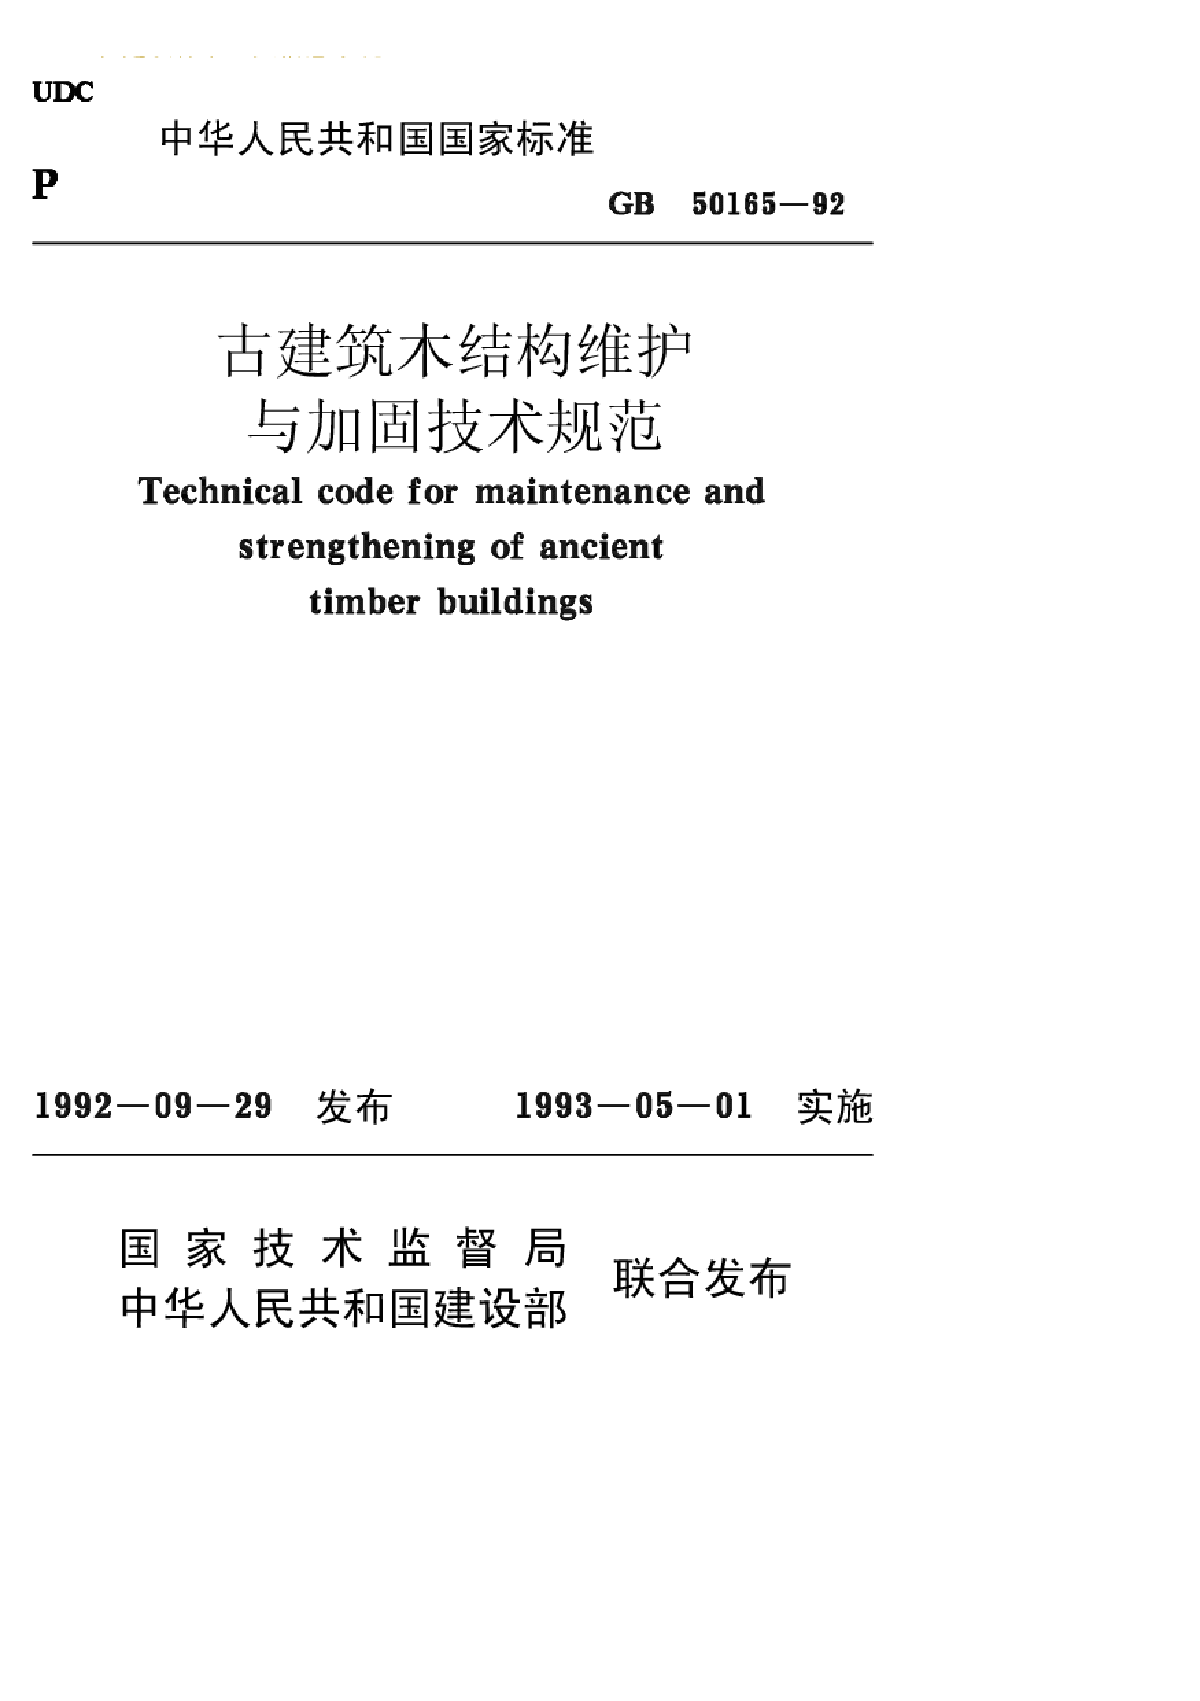 《古建筑木结构维护与加固技术规范》(GB50165-1992)-图一